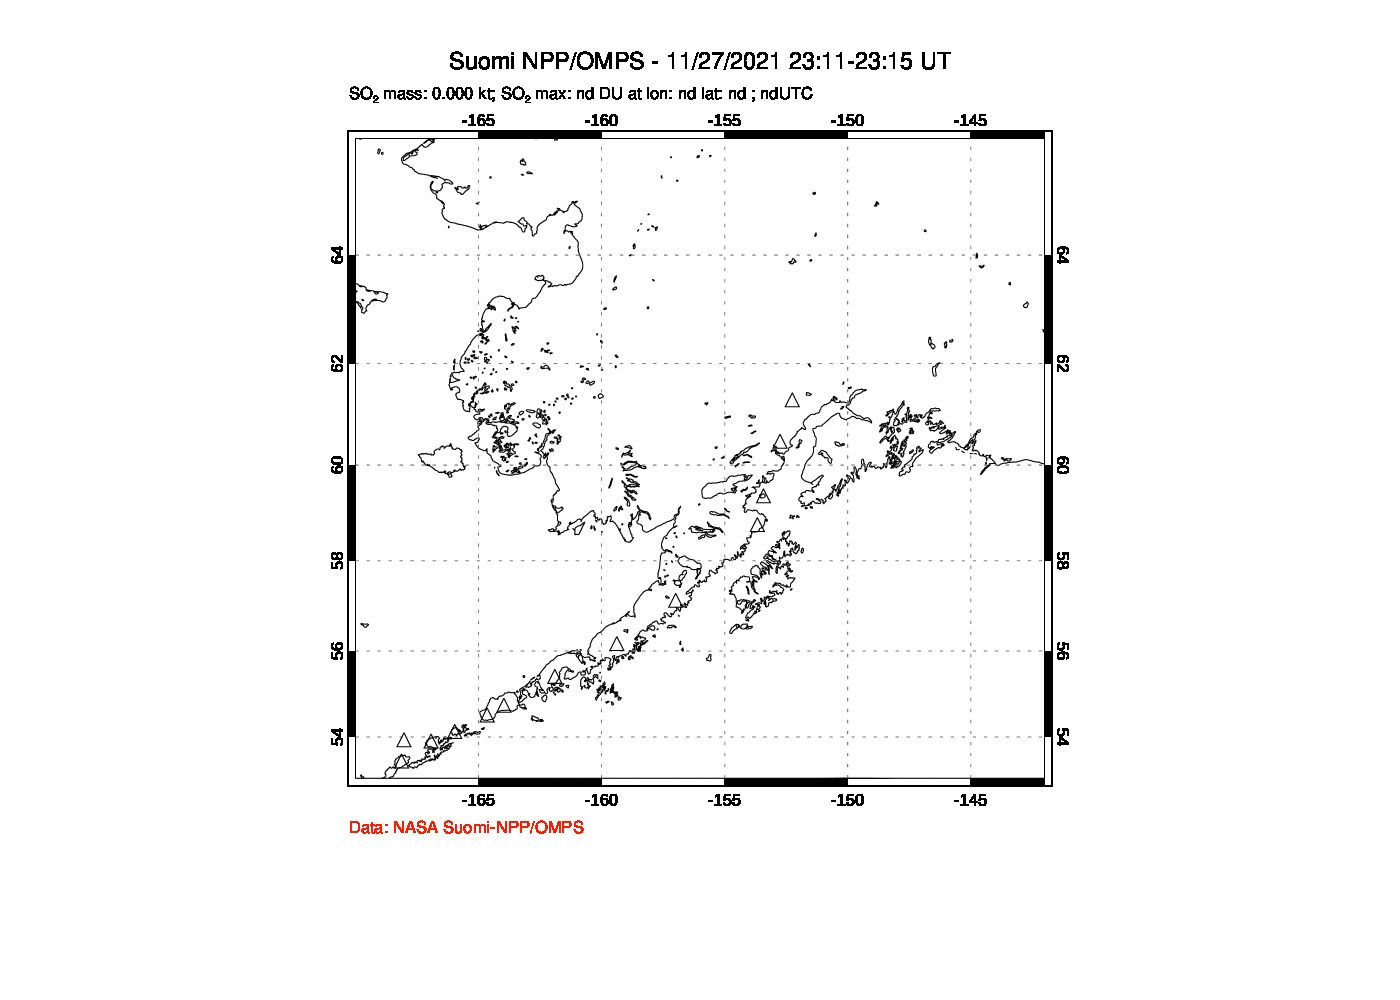 A sulfur dioxide image over Alaska, USA on Nov 27, 2021.